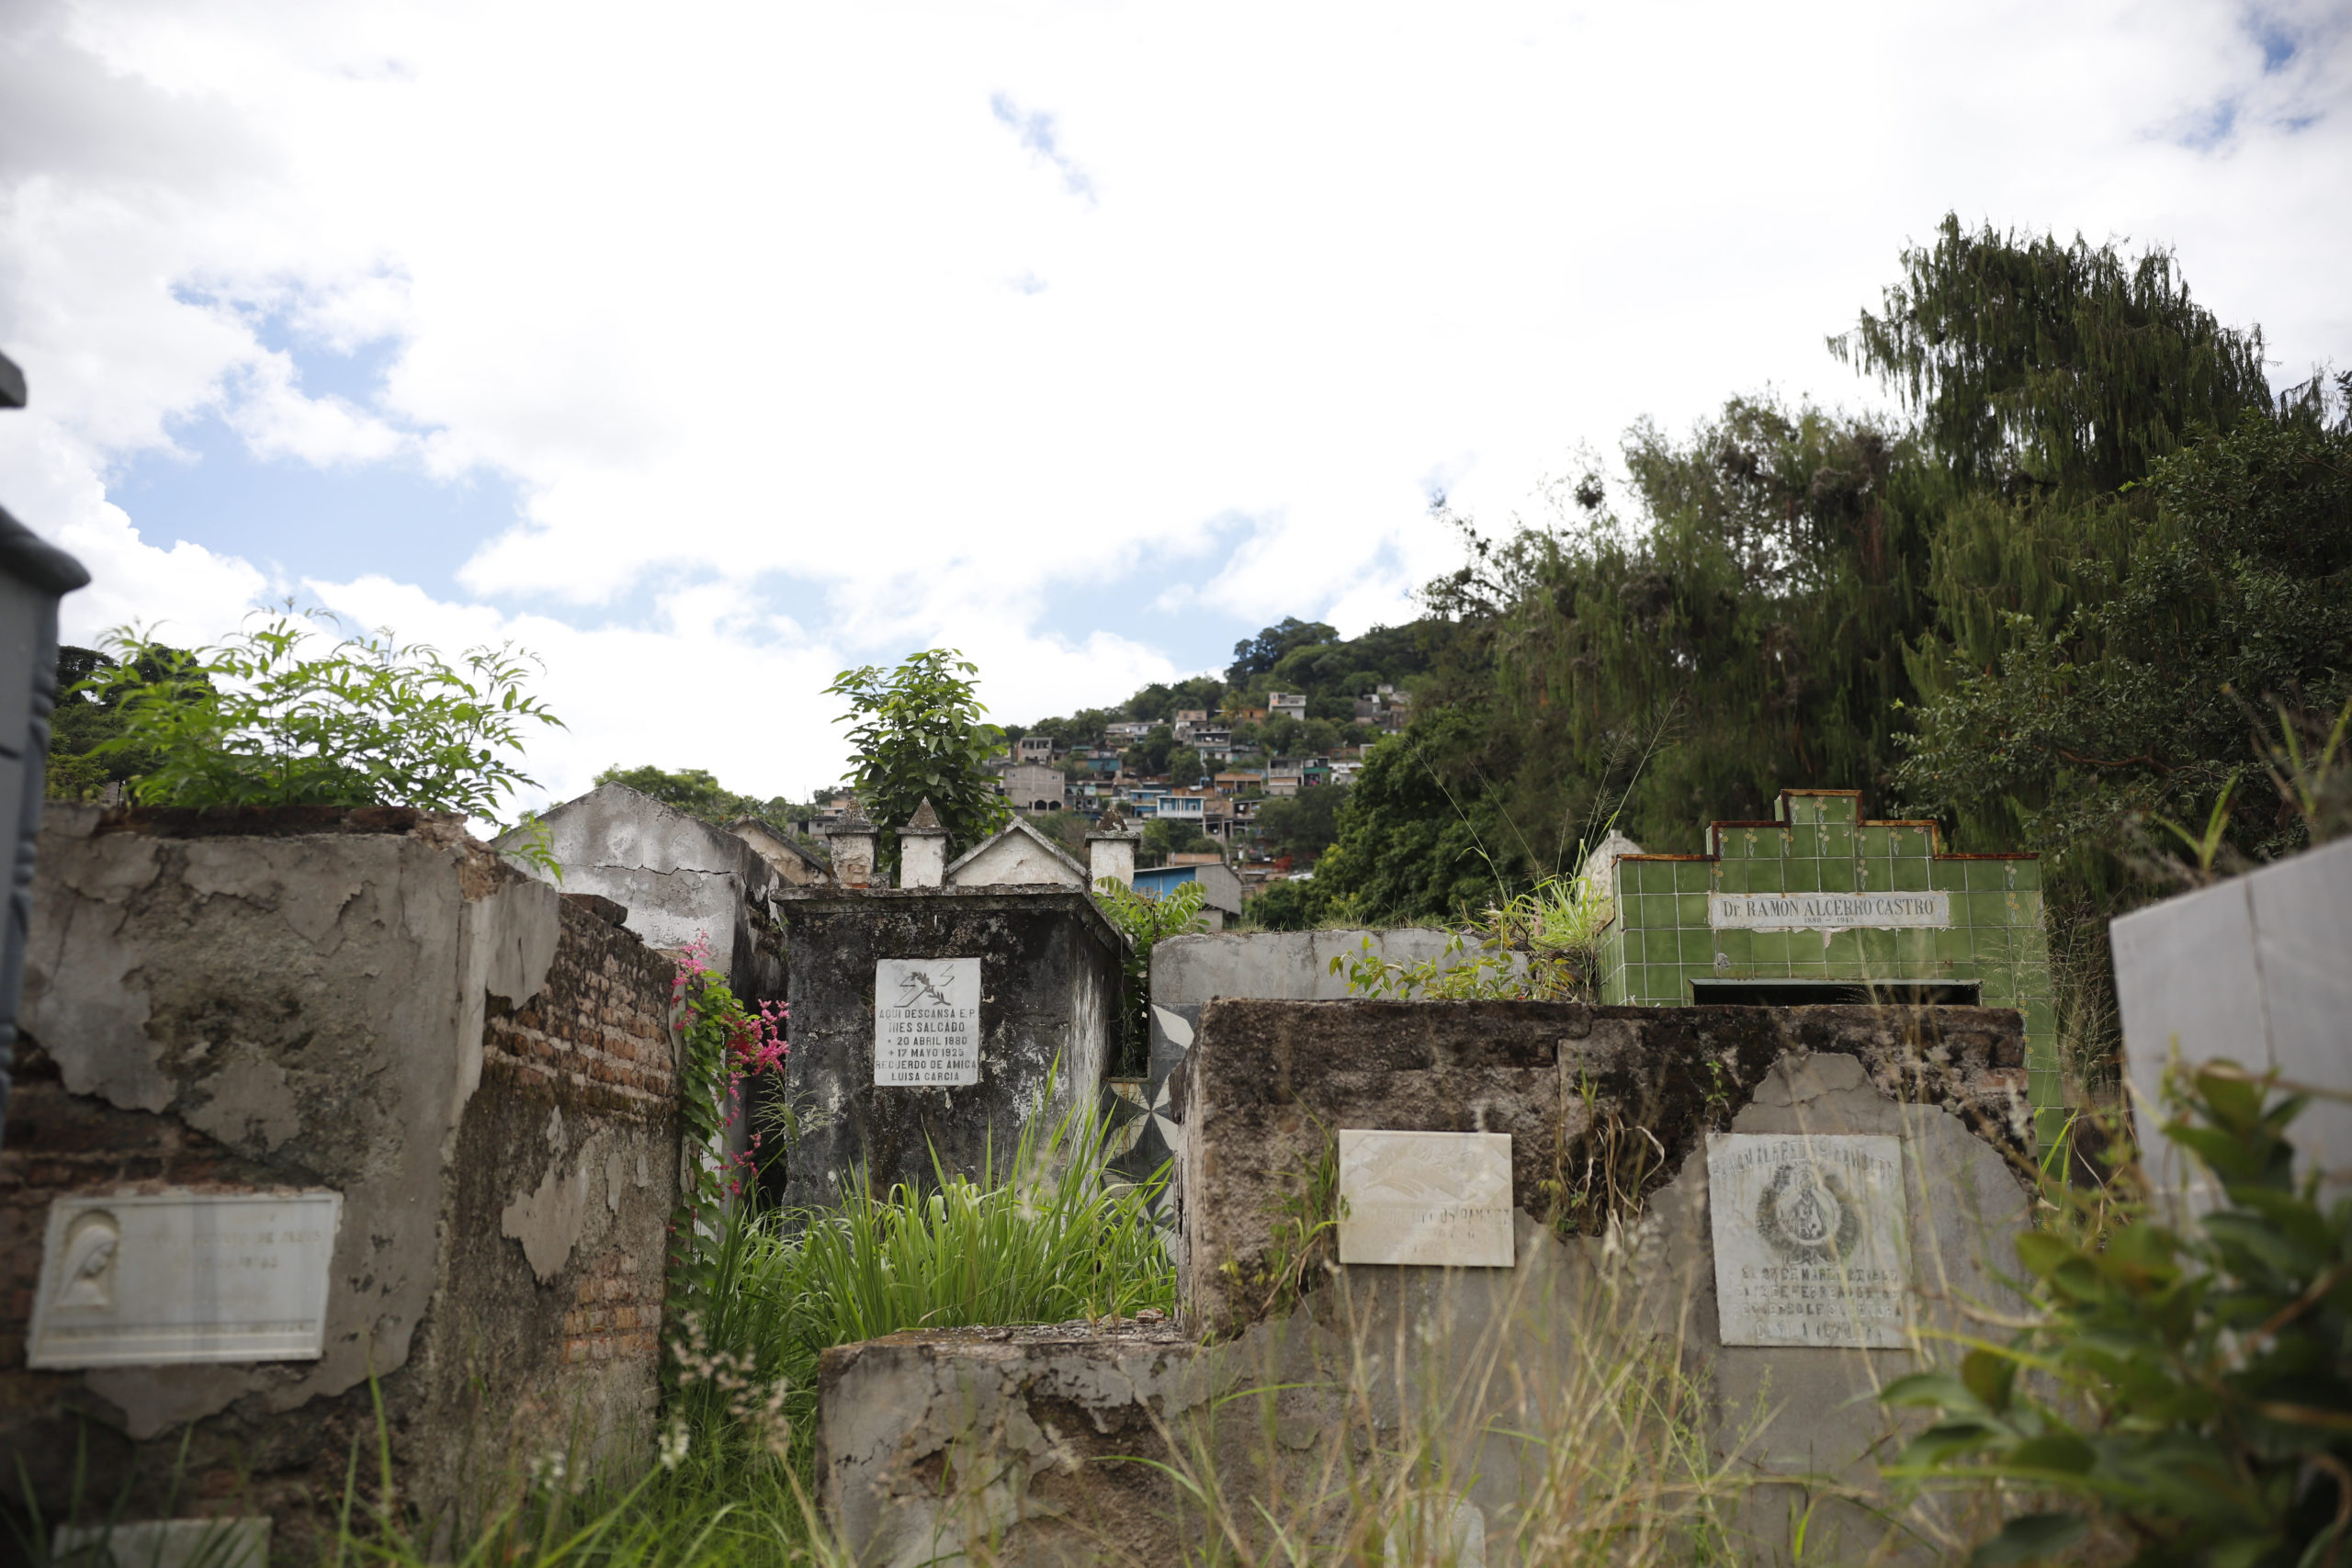 Las tumbas del Cementerio General están descuidadas y rodeadas de maleza. Foto CC/Fernando Destephen.